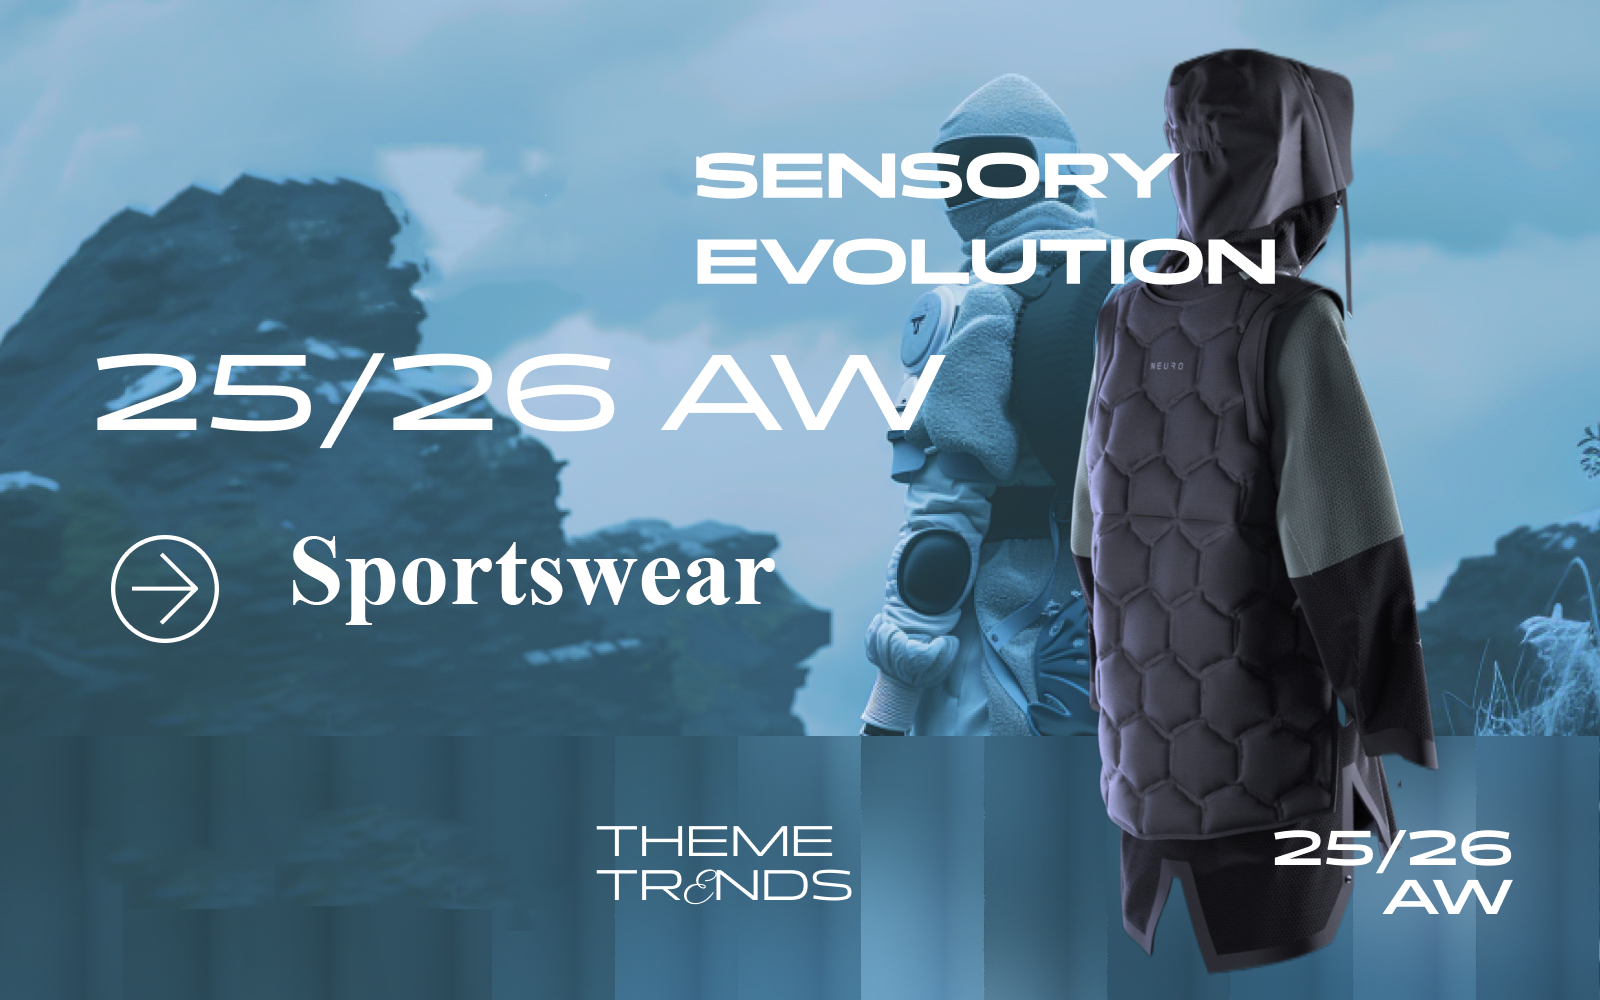 Sensory Evolution -- A/W 25/26 Pattern Trend for Sportswear